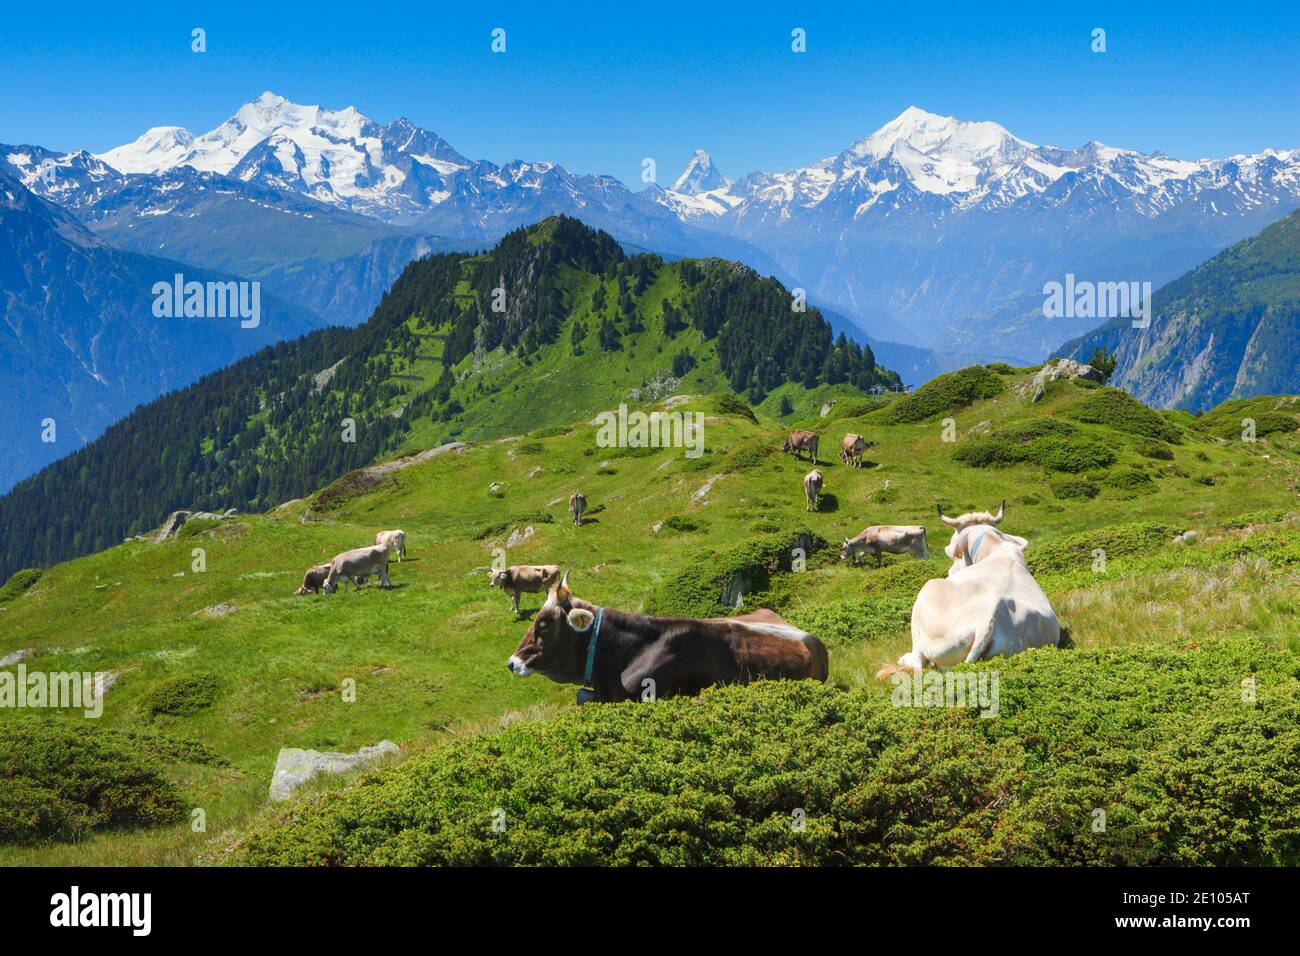 Swiss Alps, Mischabel Group, Matterhorn, Weisshorn, Valais, Switzerland, Europe Stock Photo